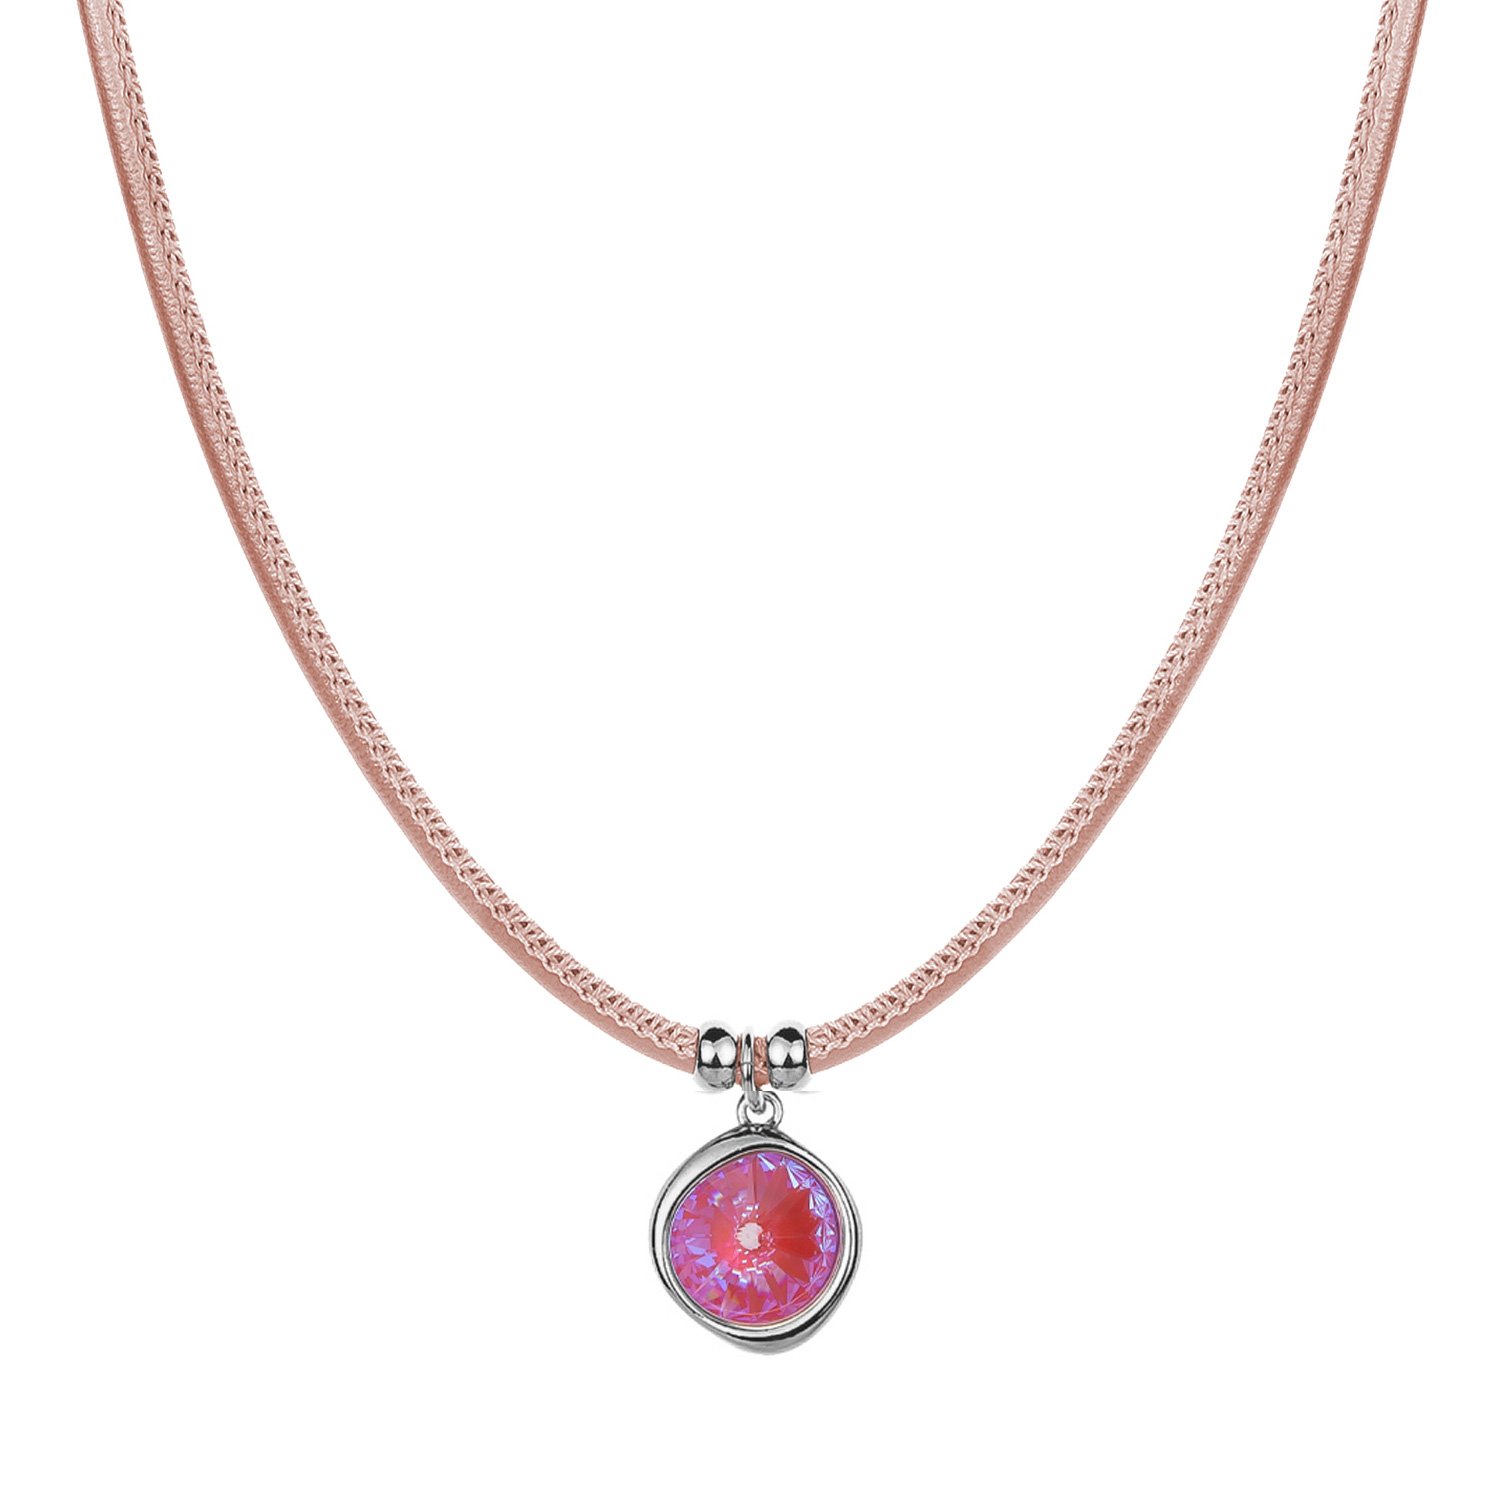  Lotus Pink Delite<br>Brand: Fiore Luna, 